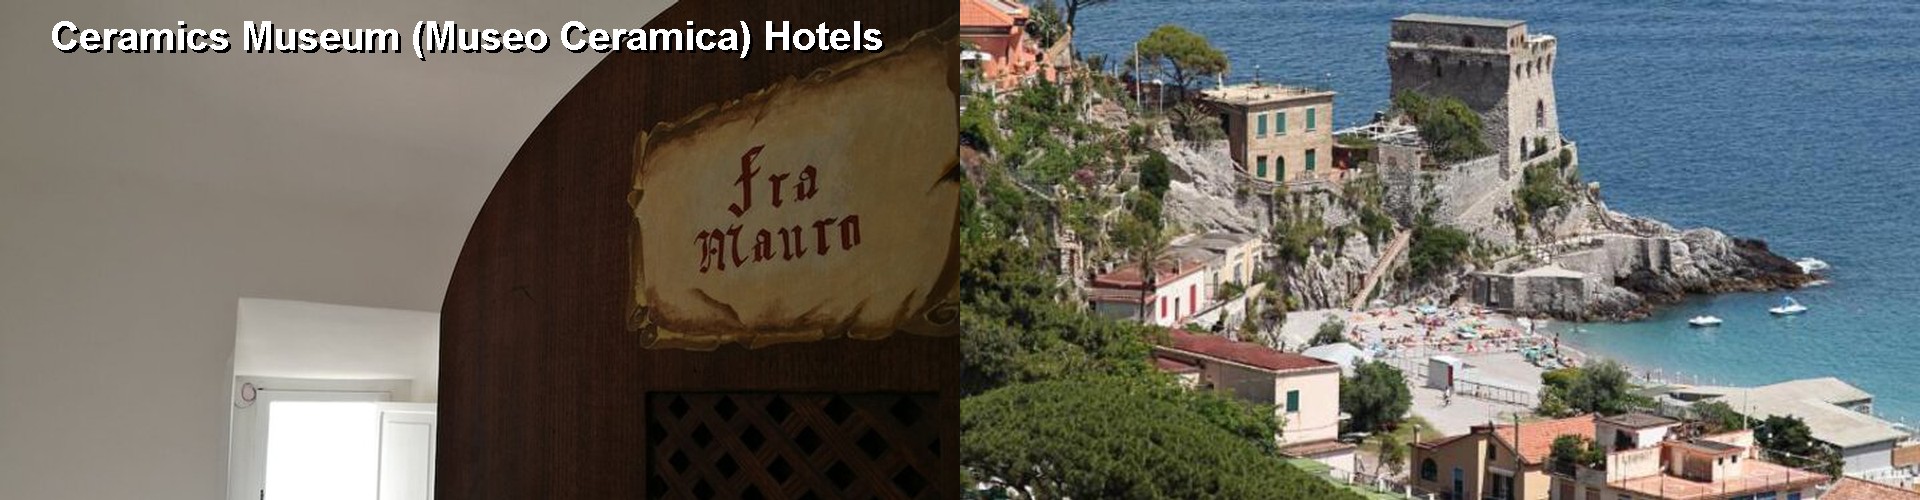 5 Best Hotels near Ceramics Museum (Museo Ceramica)